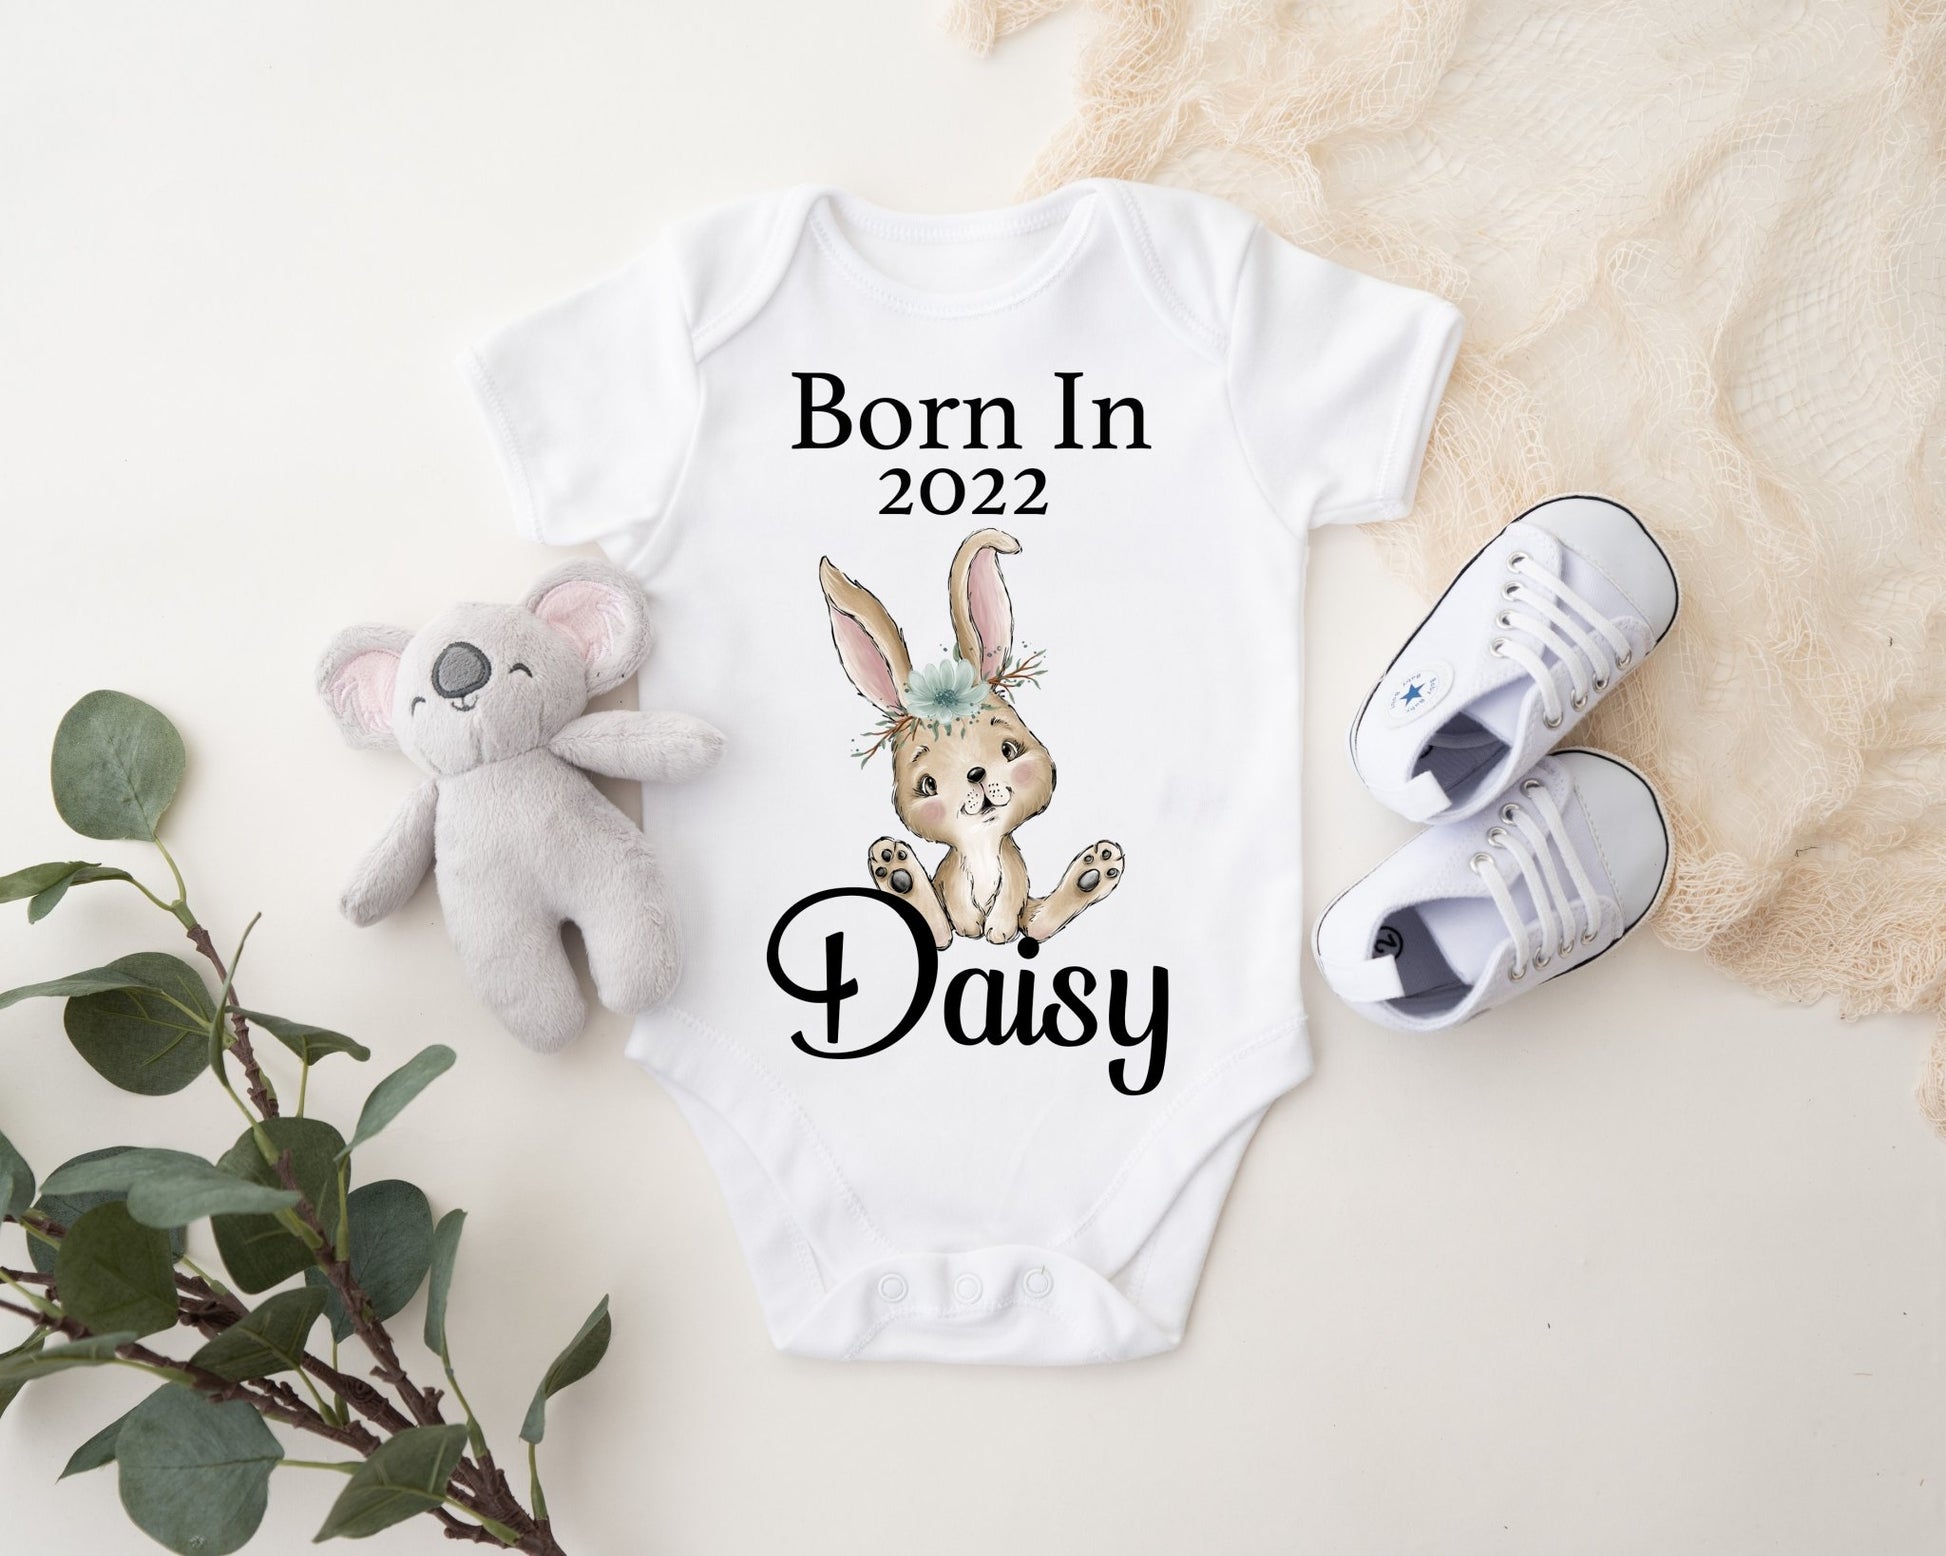 Born In 2022 Vest - Rabbit Girl Print